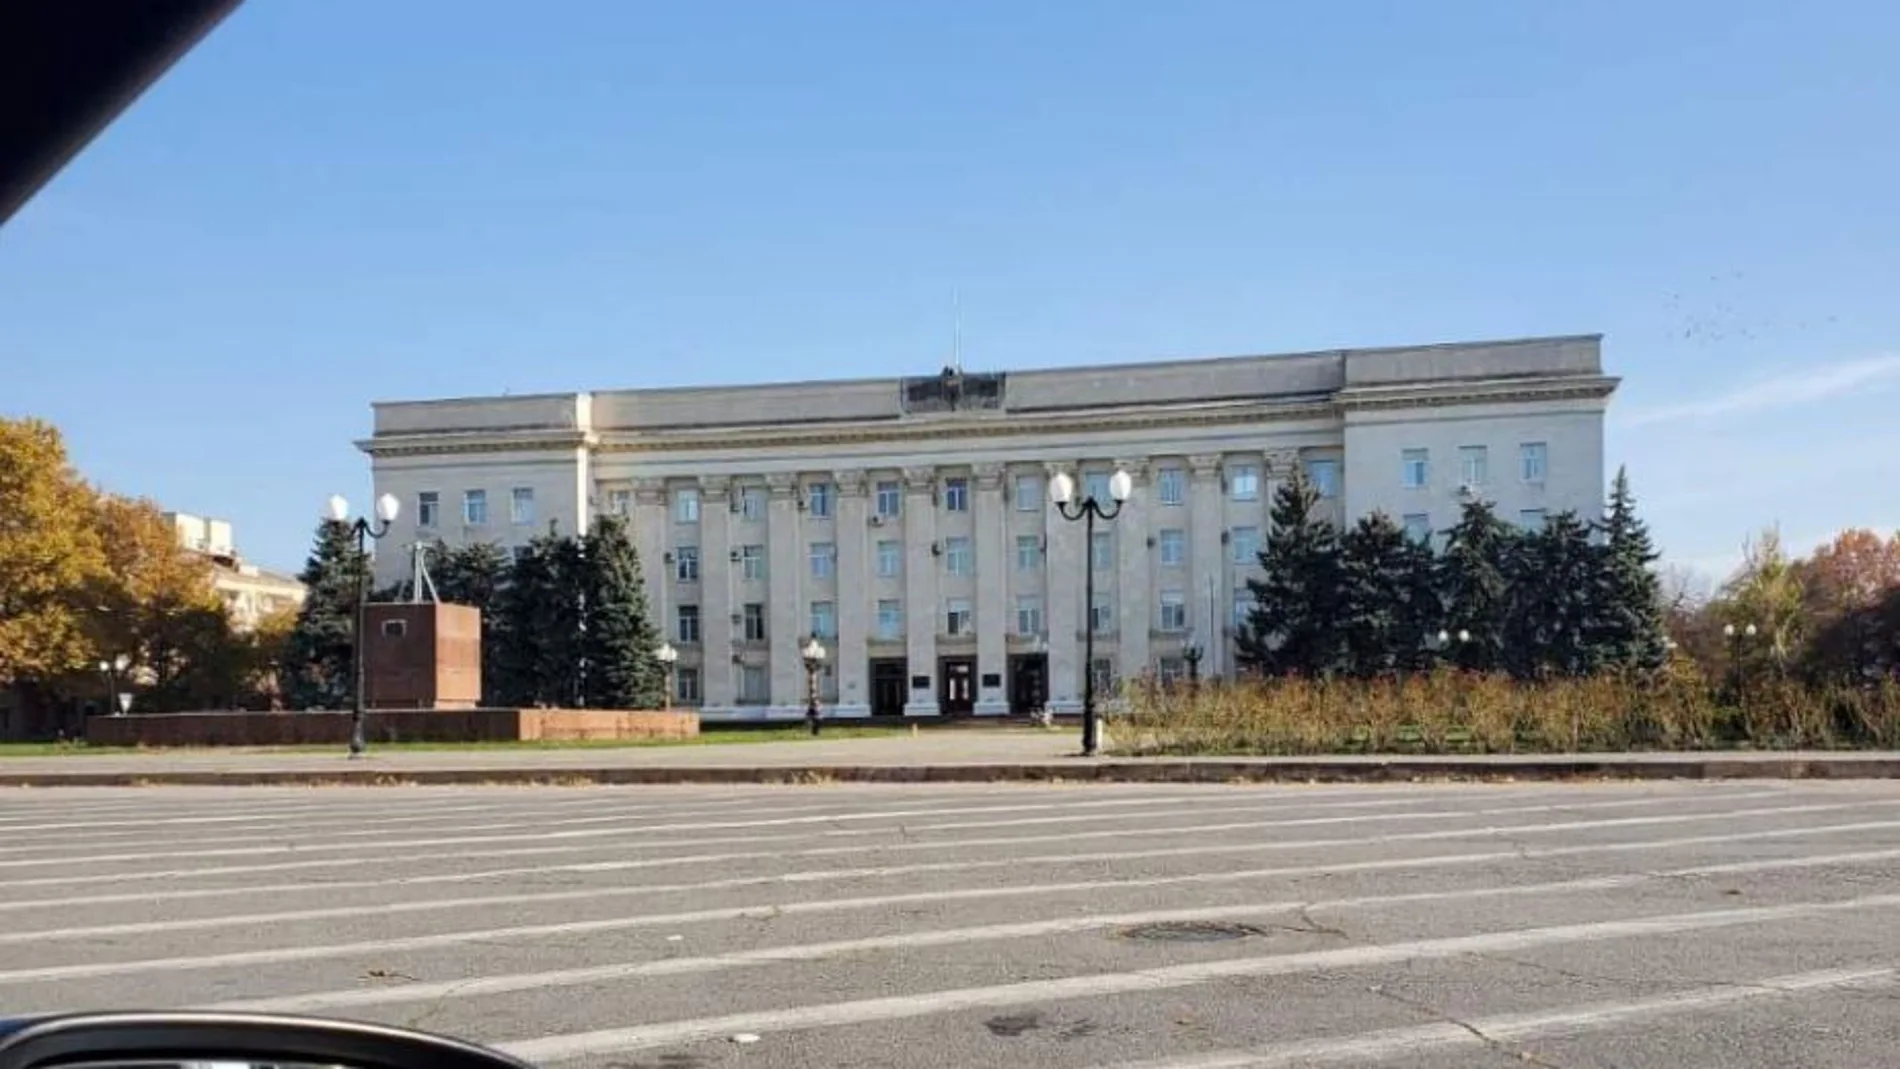 Edificio de la administración provincial de Jersón, sin la bandera de RusiaVICEPRESIDENTE DEL CONSEJO REGIO03/11/2022